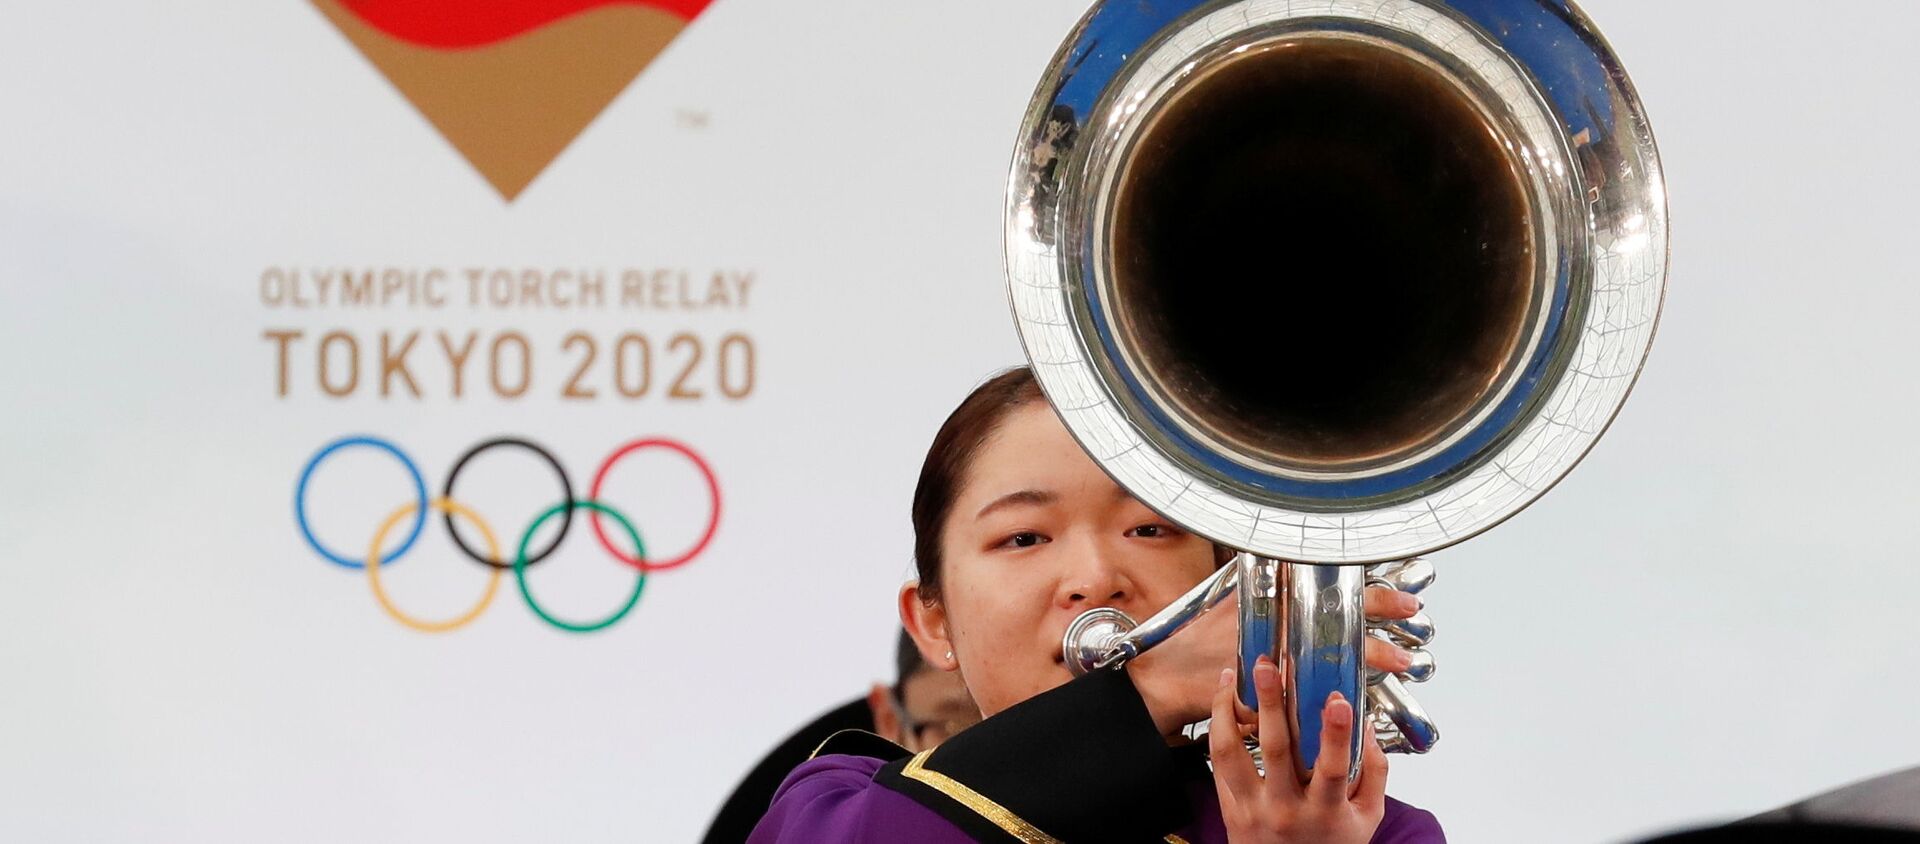 Участник оркестра  играет на музыкальном инструменте во время эстафеты Олимпийского огня в Токио-2020 в префектуре Фукусима, Япония - Sputnik Արմենիա, 1920, 26.04.2021